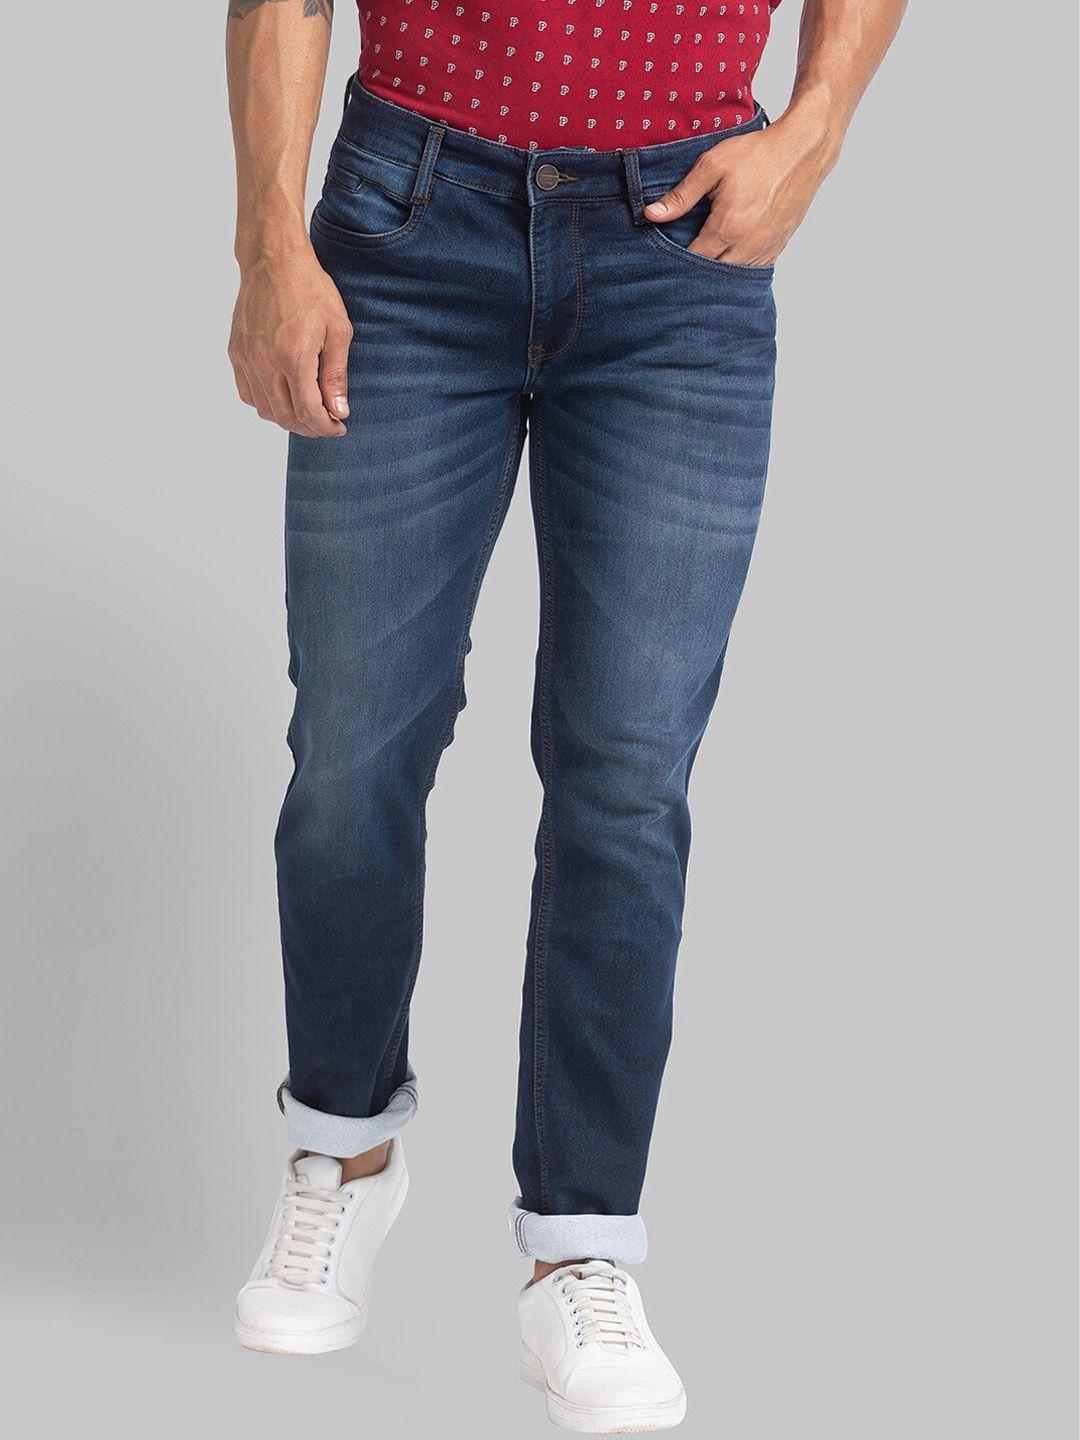 parx-men-blue-slim-fit-light-fade-jeans